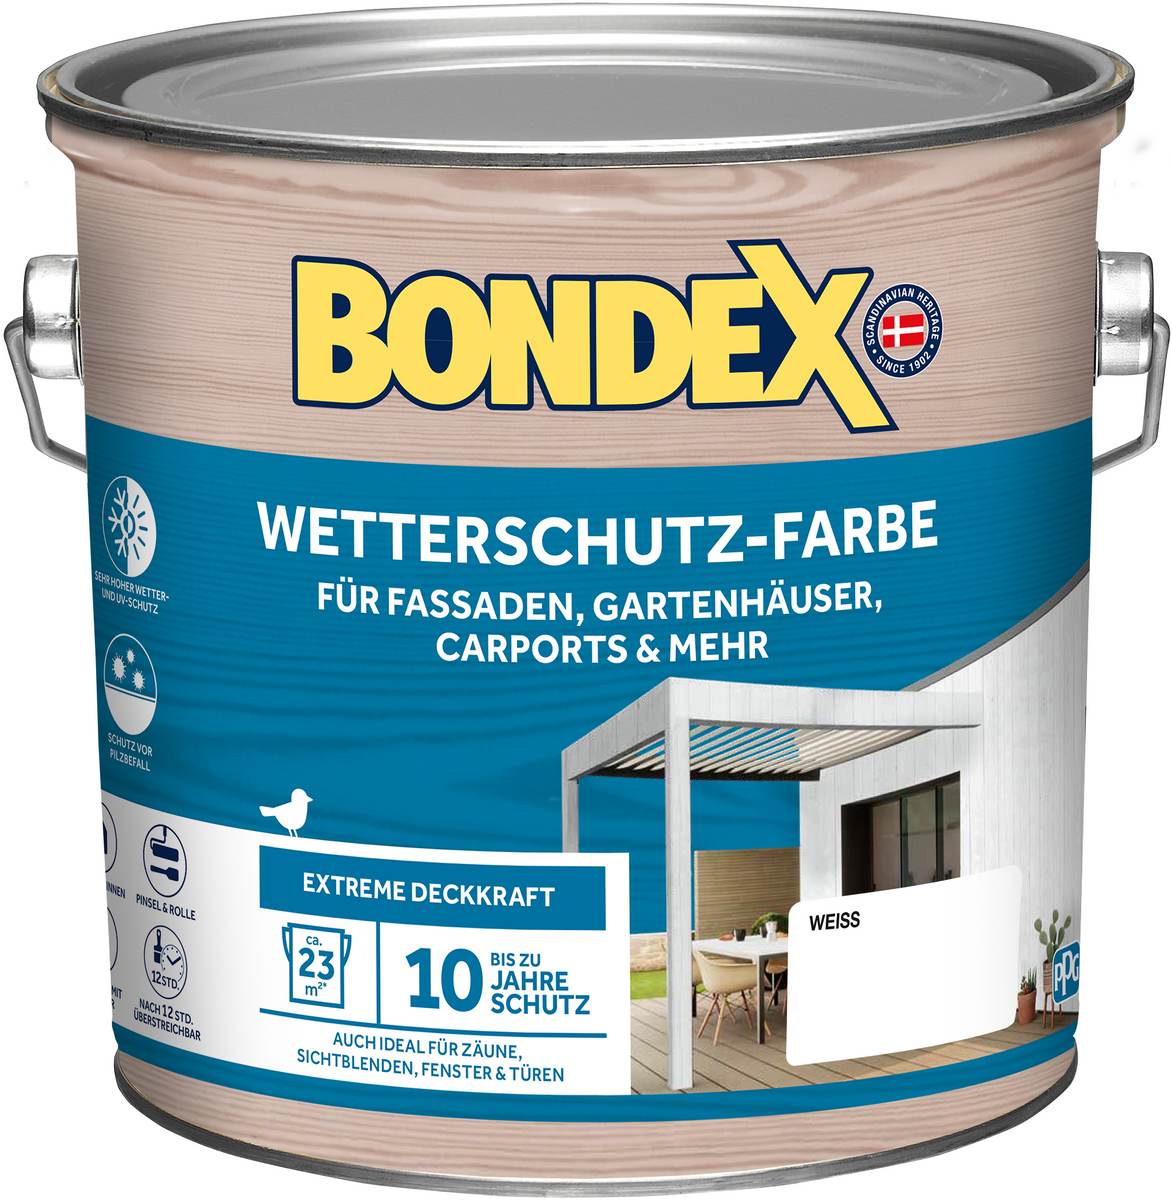 BONDEX Wetterschutz-Farbe 2,5 L in Weiss, witterungsbeständig, atmungsaktiv, extreme Deckkraft